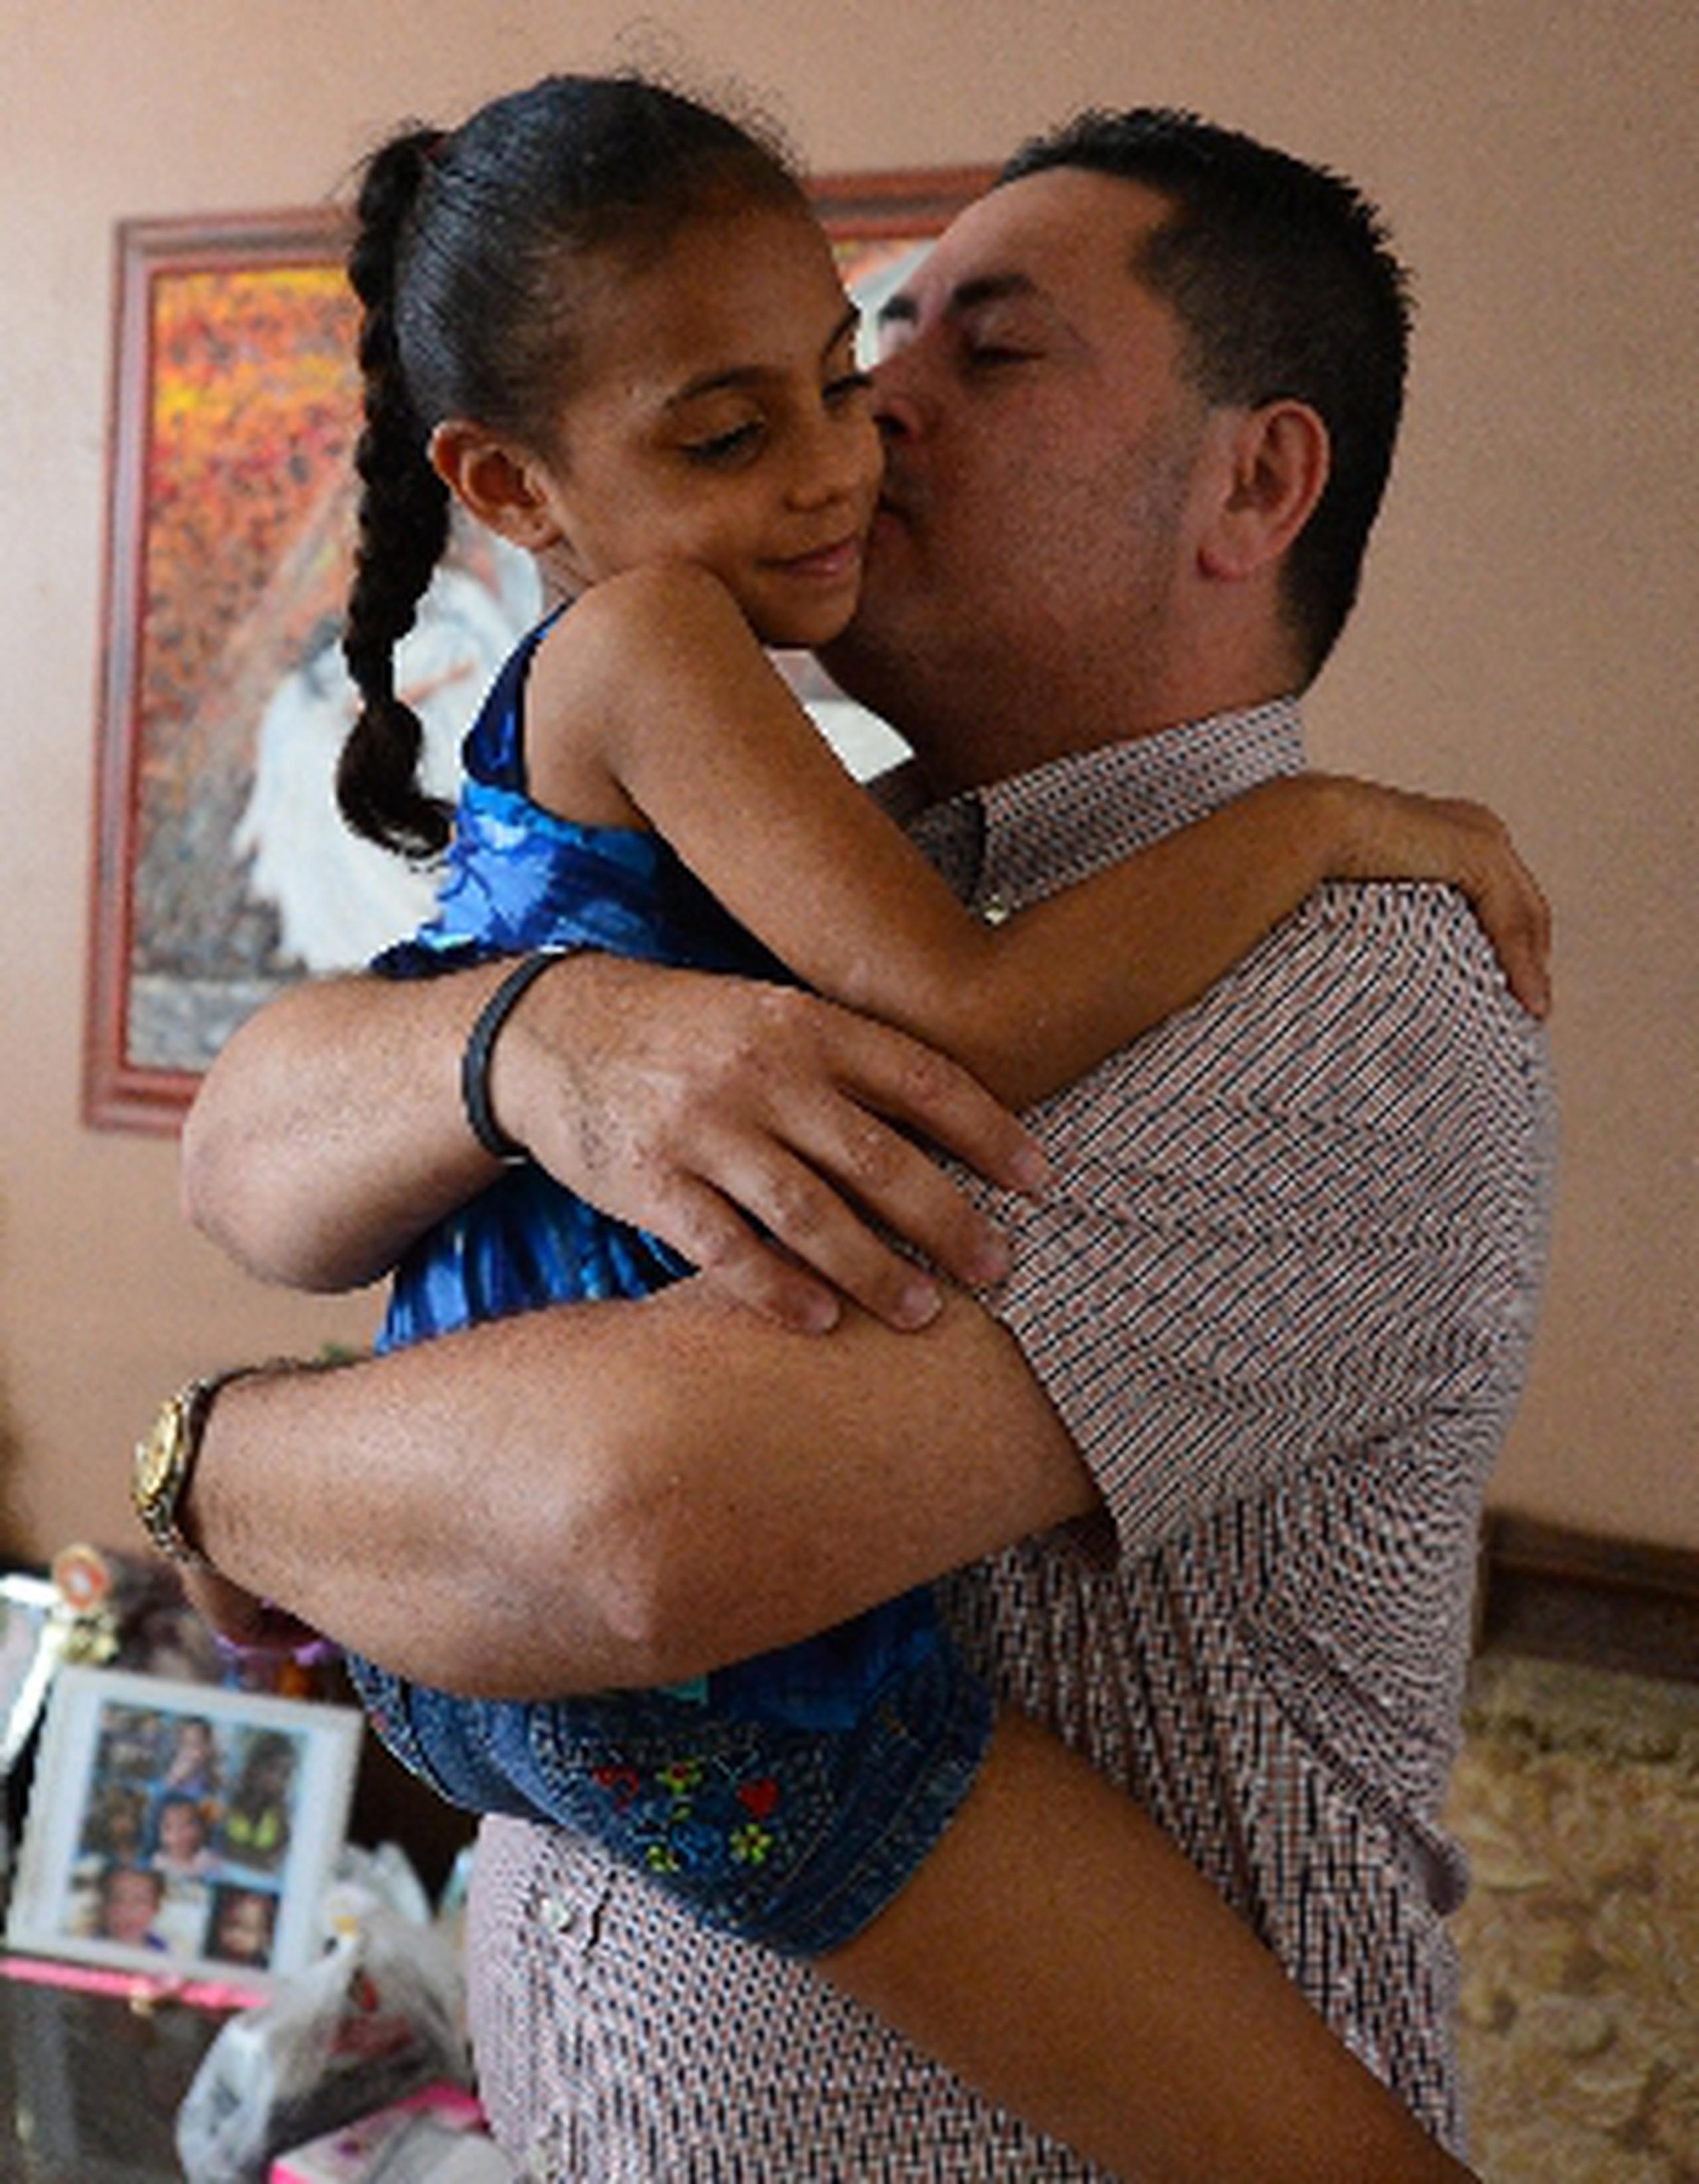 Yaiza Montalvo Calderón abraza a su tío político Rafael Saldaña, padre de dos de los niños que fallecieron en el trágico accidente del 1 de febrero, y  quienes eran primos hermanos de la menor. (luis.alcaladelolmo@gfrmedia.com)